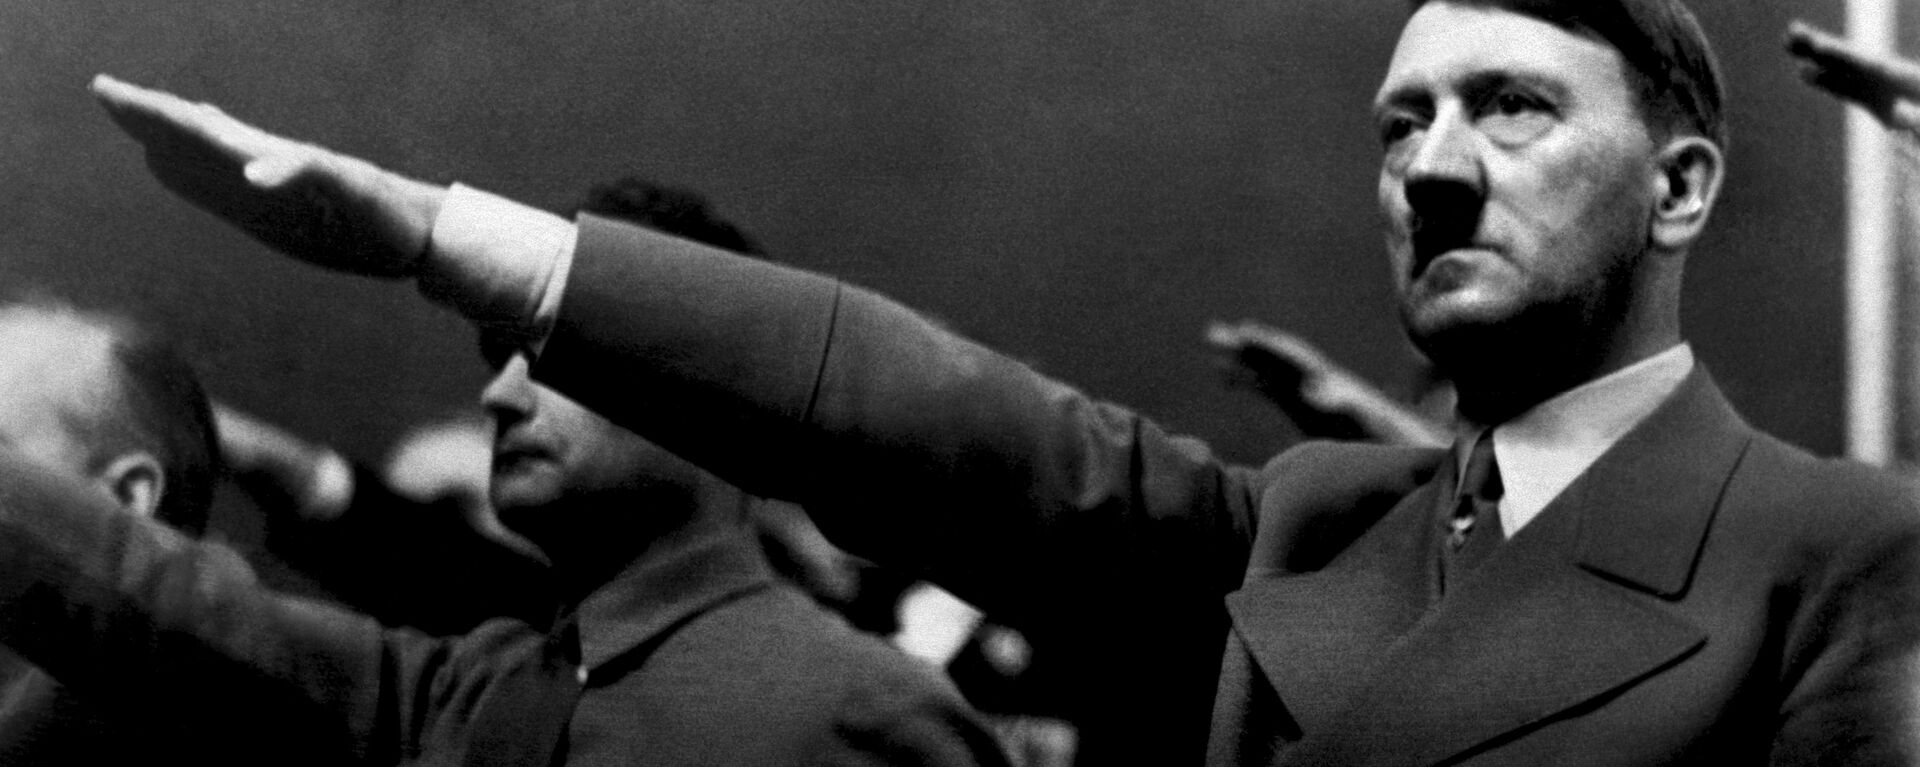 Адолф Хитлер и Рудолф Хес 1939. године. - Sputnik Србија, 1920, 18.12.2020